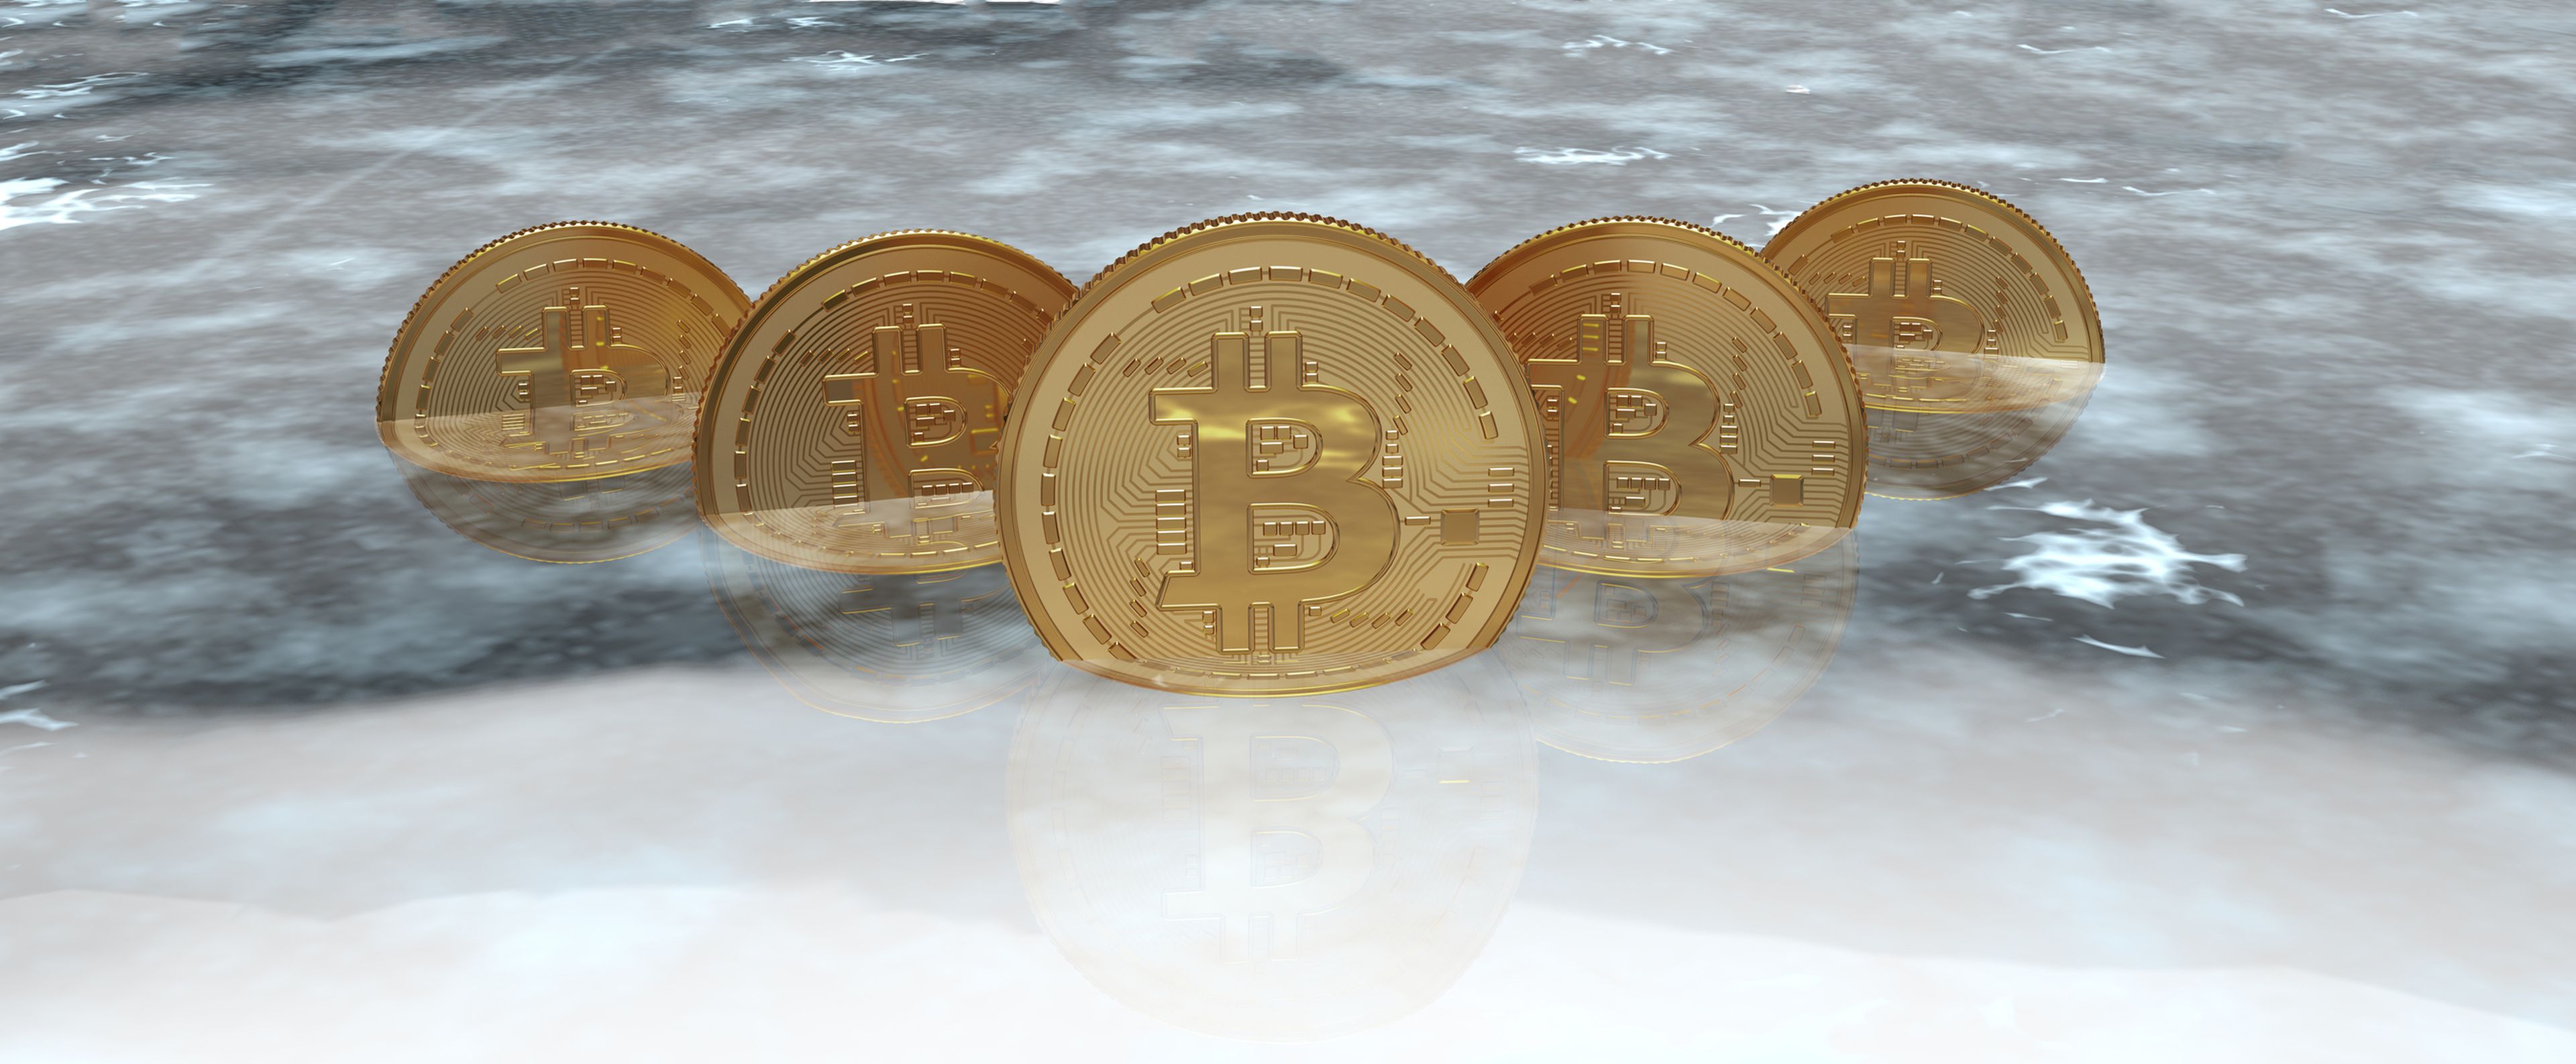 Varios bitcoins metidos en hielo.